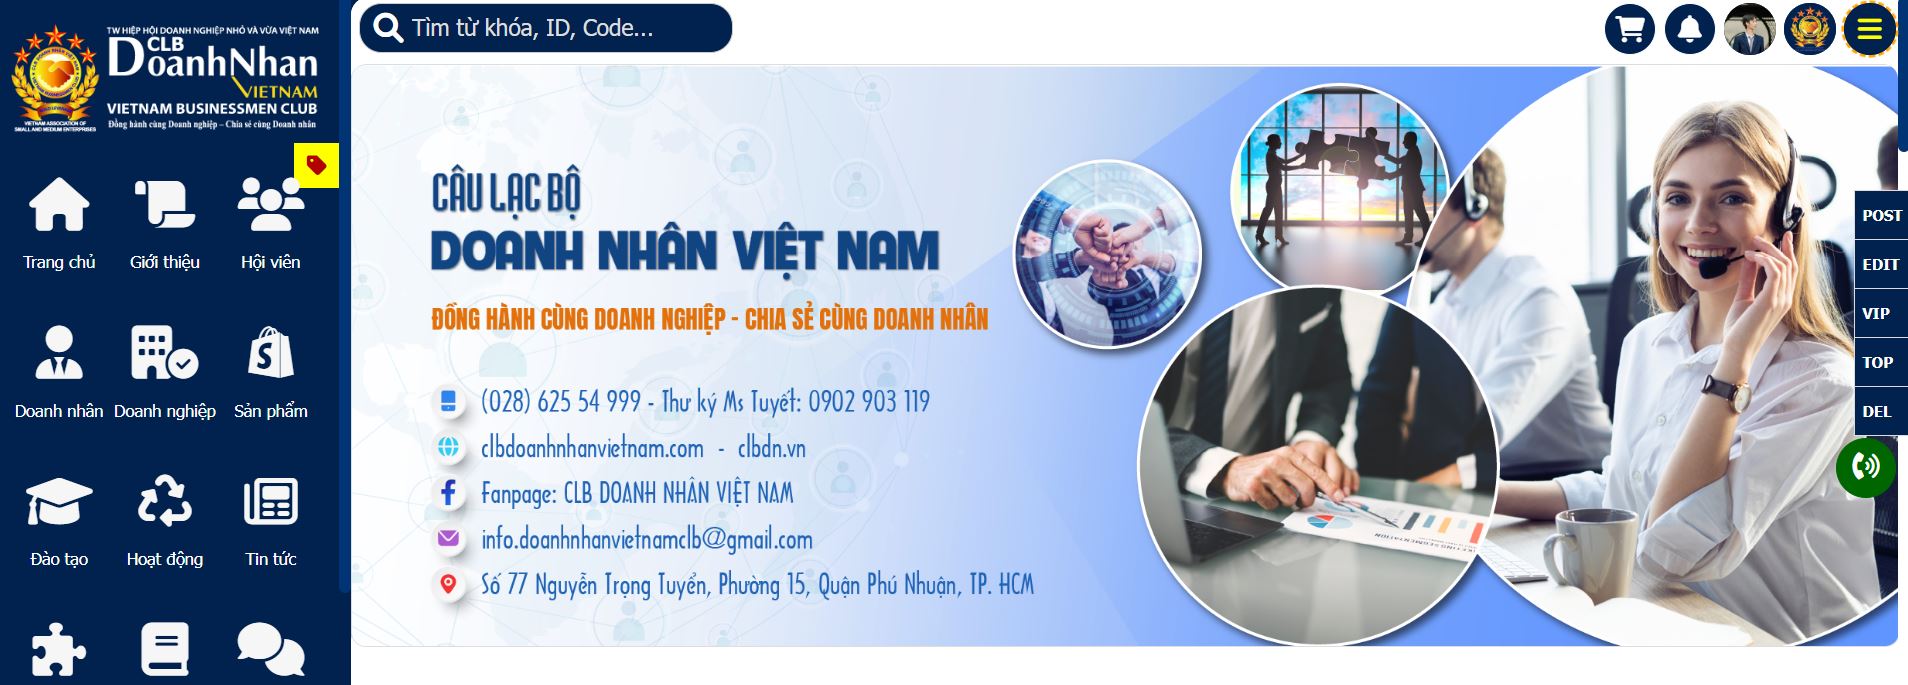 5. Hệ thống Câu lạc bộ Doanh nhân Việt Nam